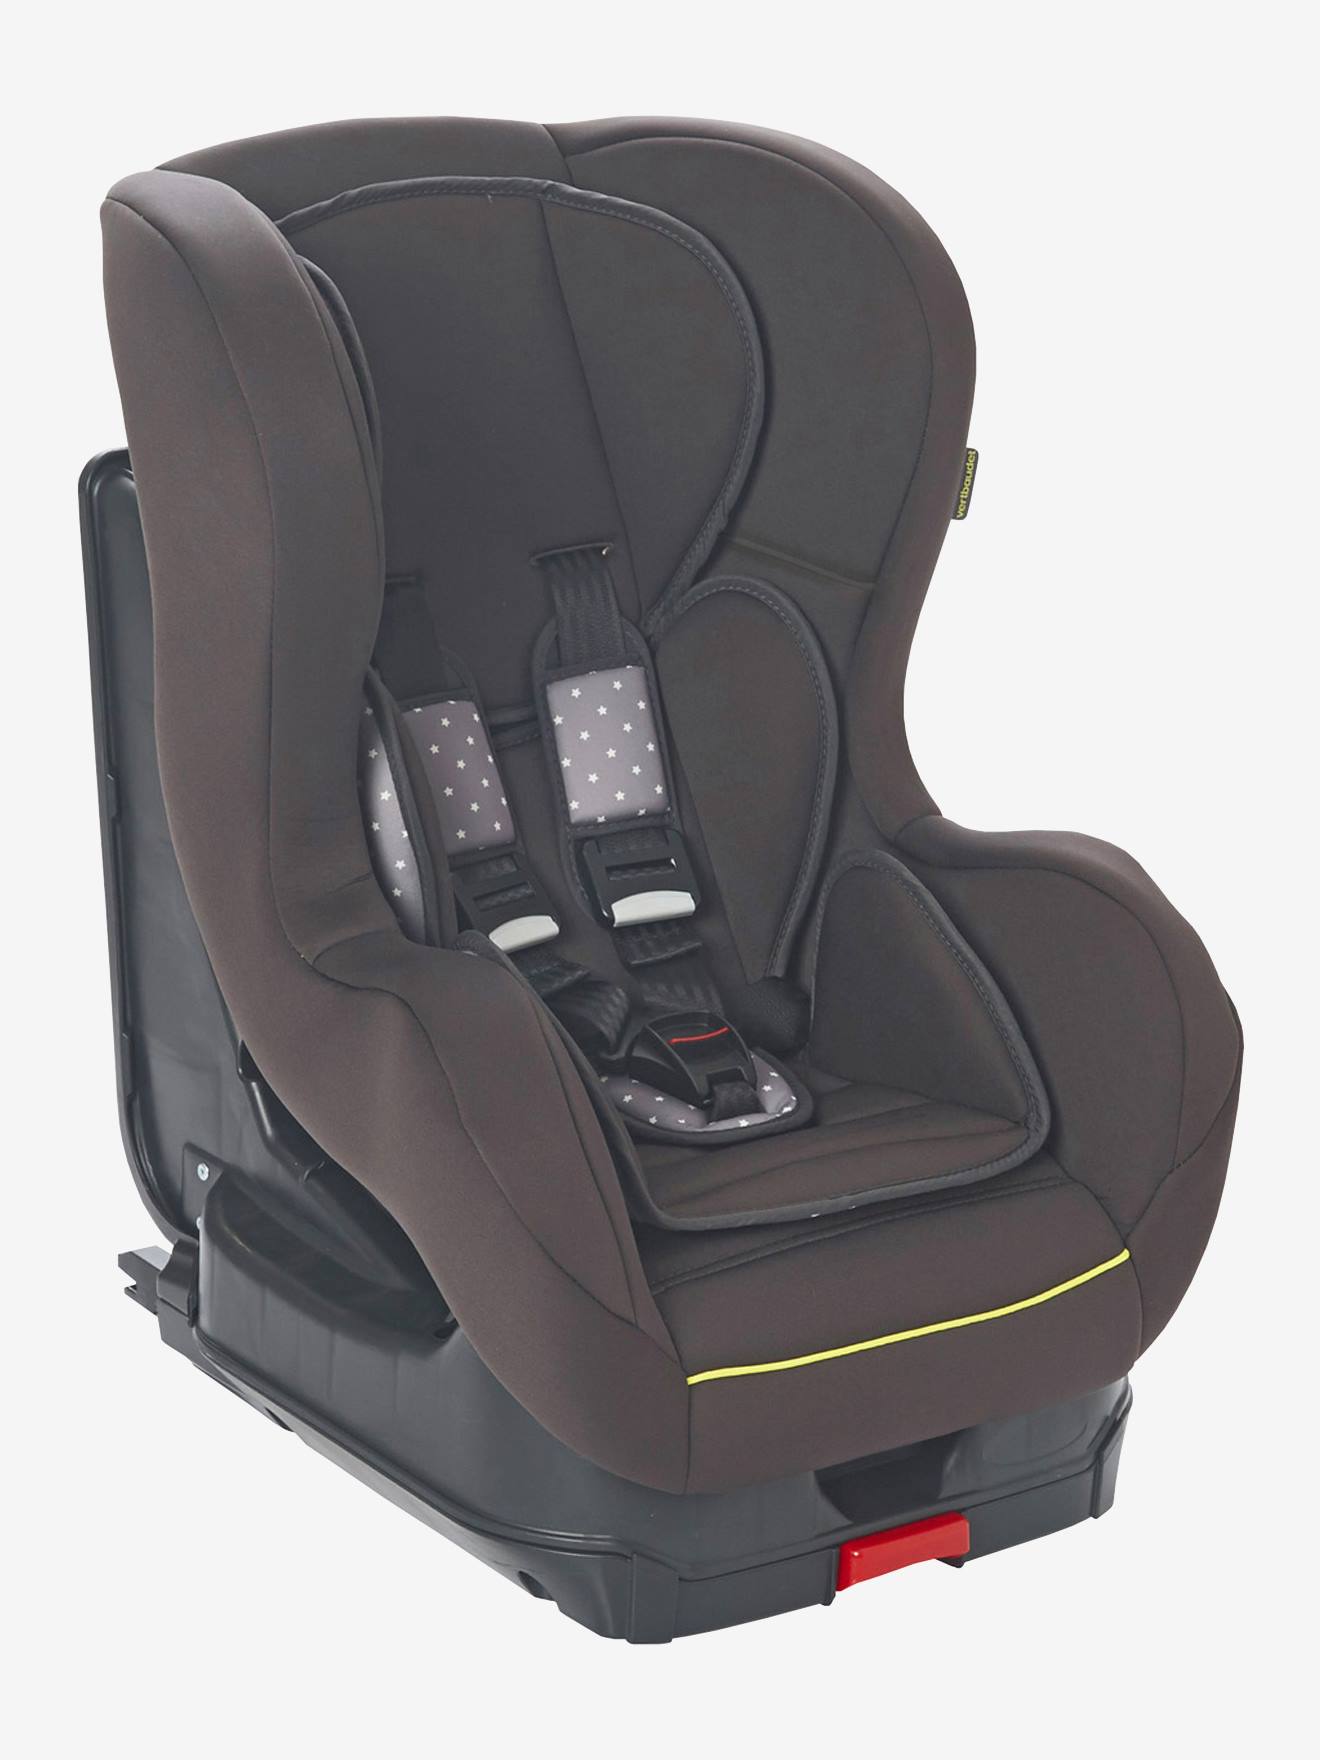 1 coussin de protection pour siège de bébé Pour enfants de 0 à 1 ans. En coton de polypropylène 